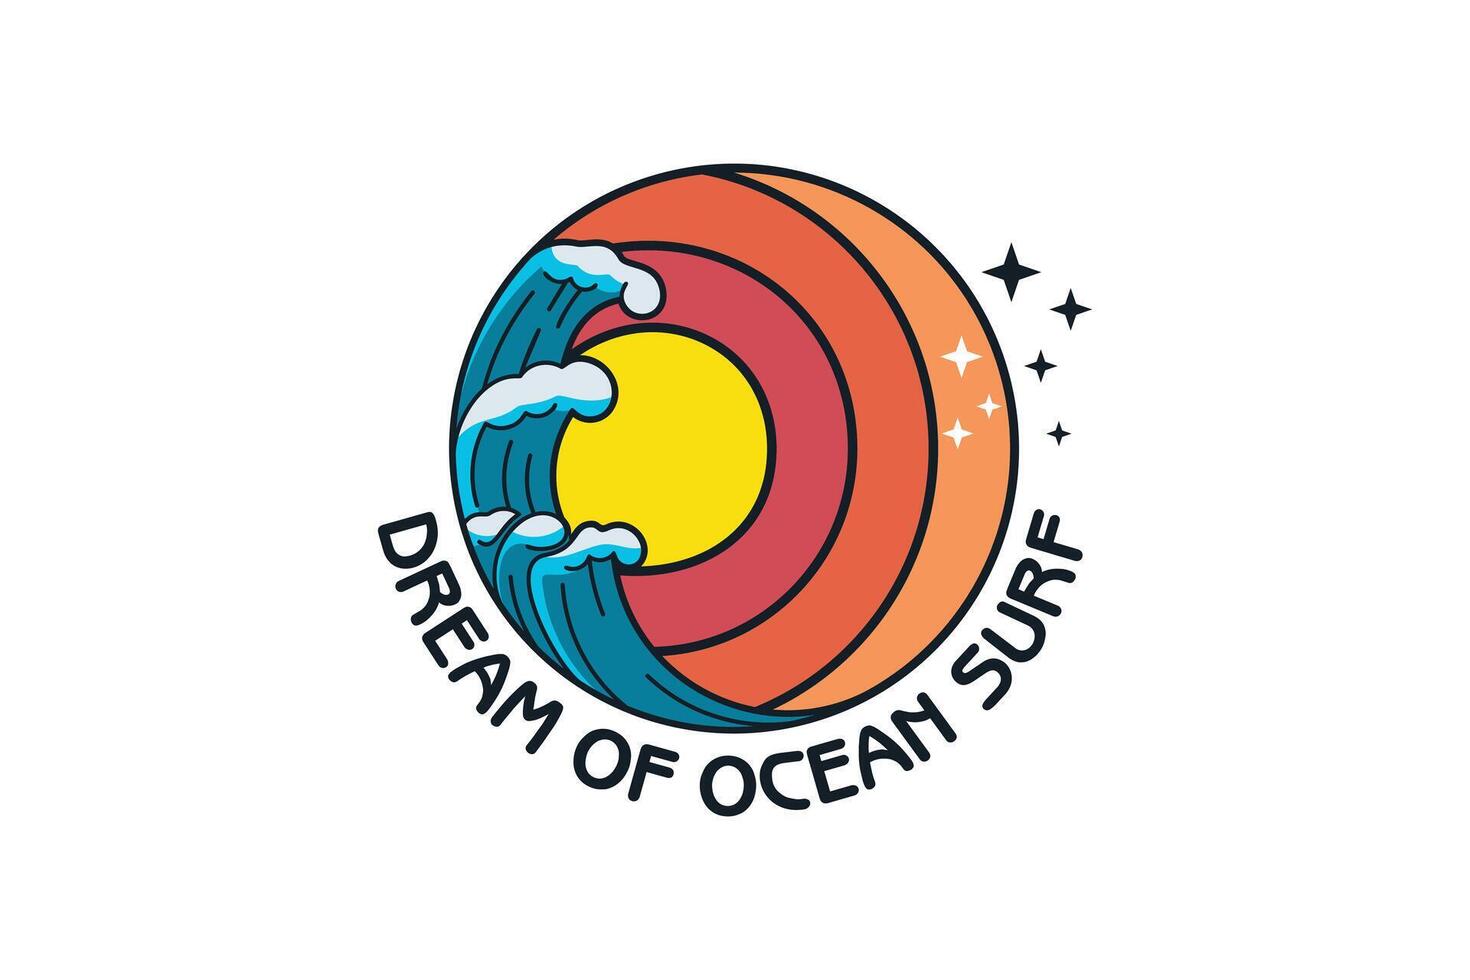 Oceano navegar logo diseño creativo concepto estilo vector